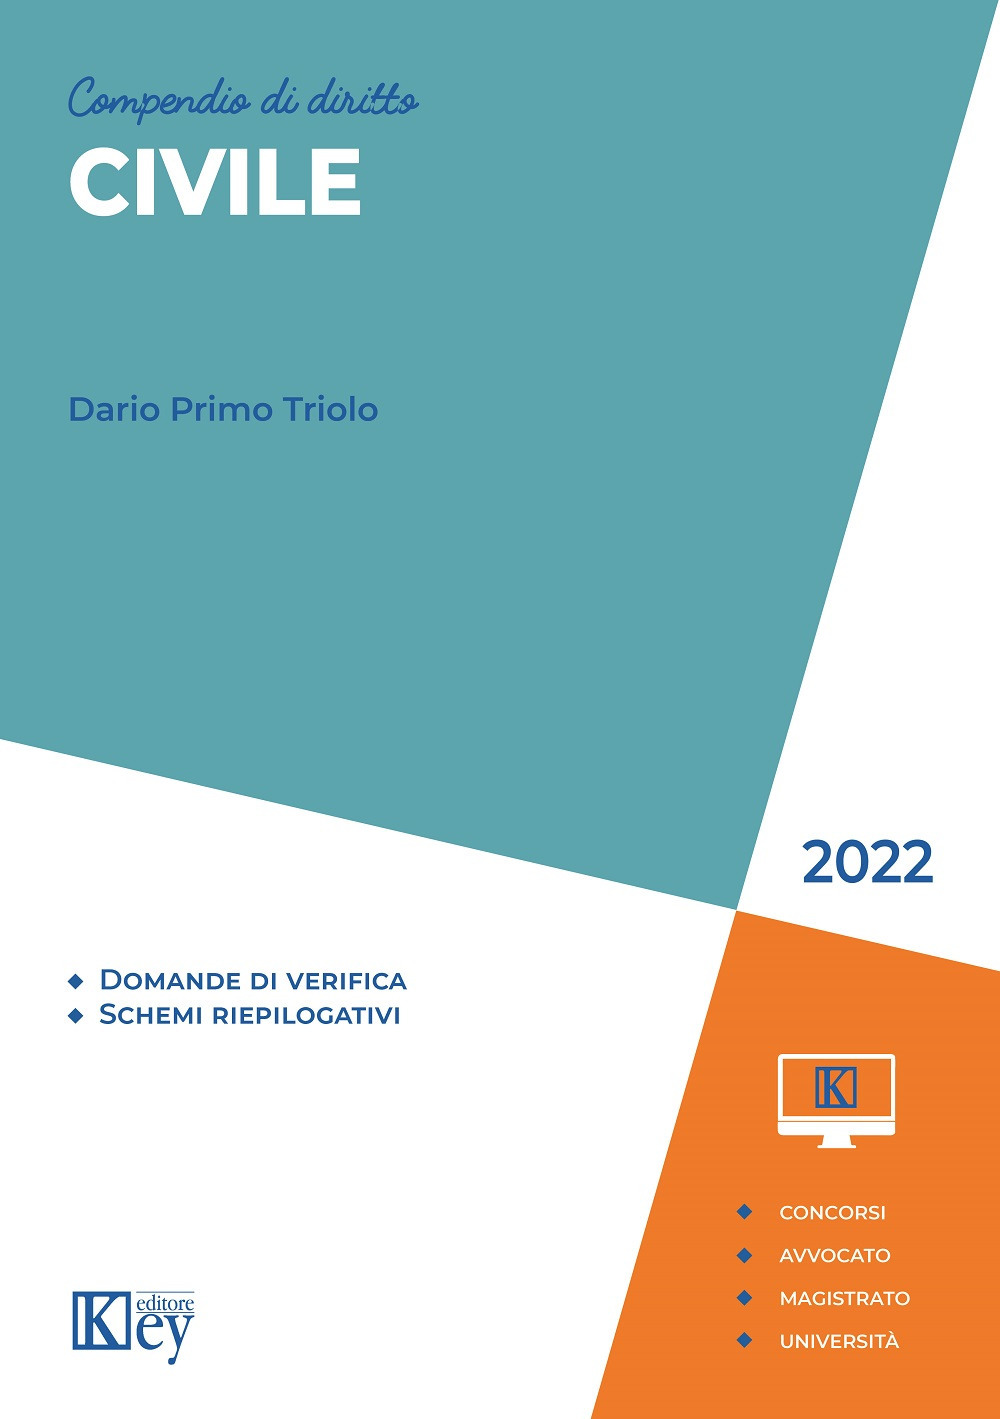 Libri Triolo Dario Primo - Compendio Di Diritto Civile 2022 NUOVO SIGILLATO, EDIZIONE DEL 28/03/2022 SUBITO DISPONIBILE